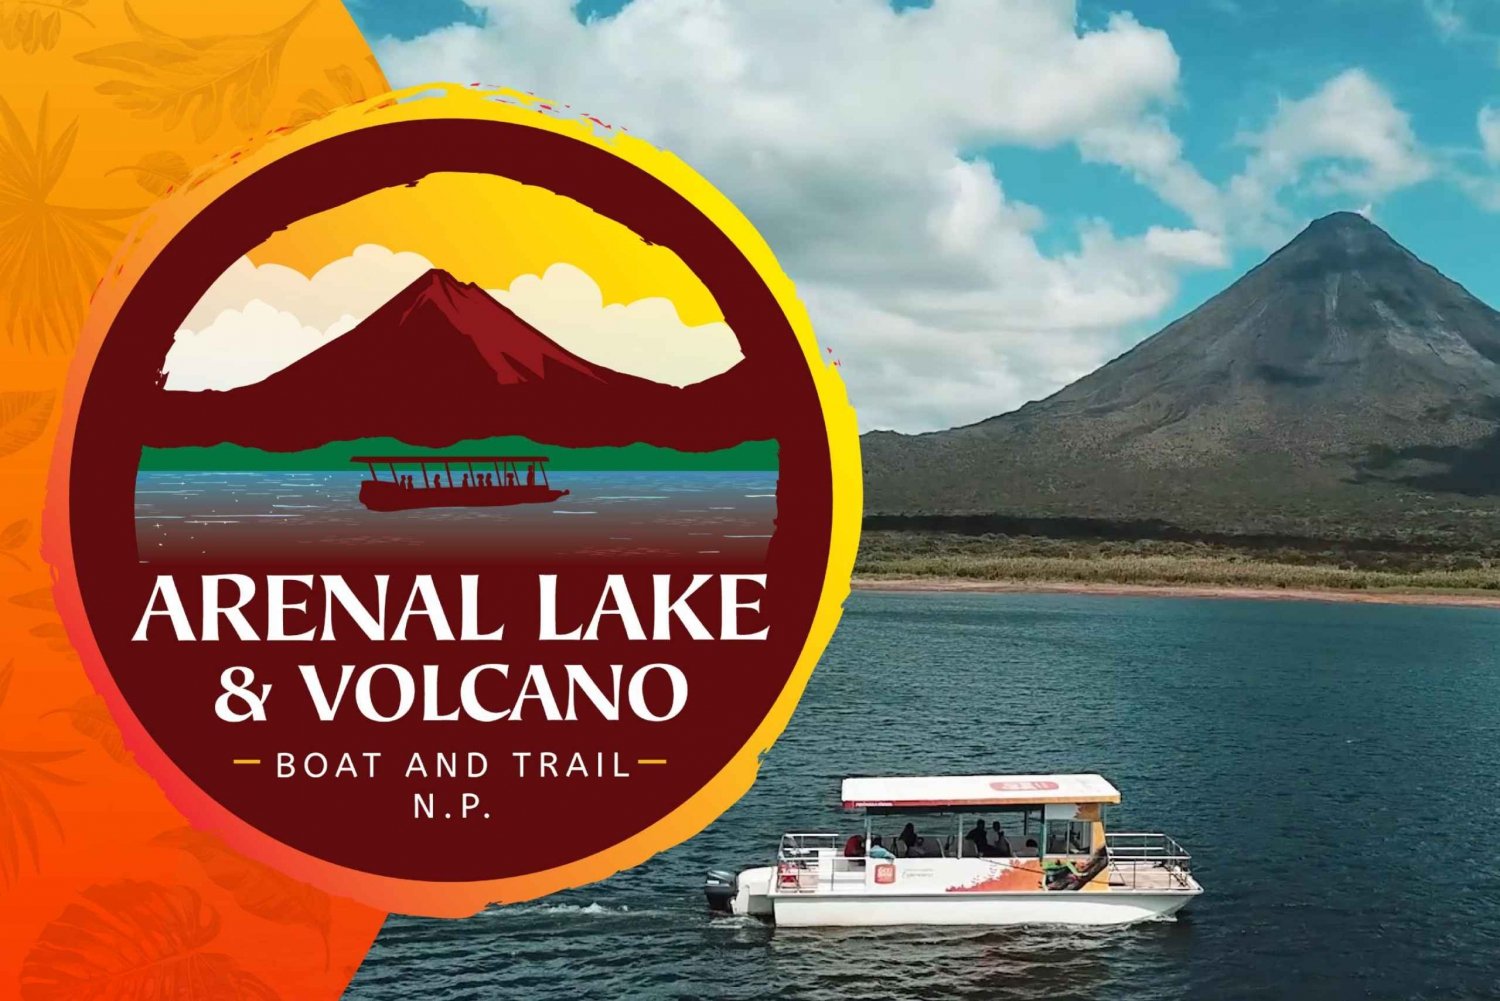 Park Narodowy Arenal Volcano w małej grupie i wycieczka po jeziorze Eco